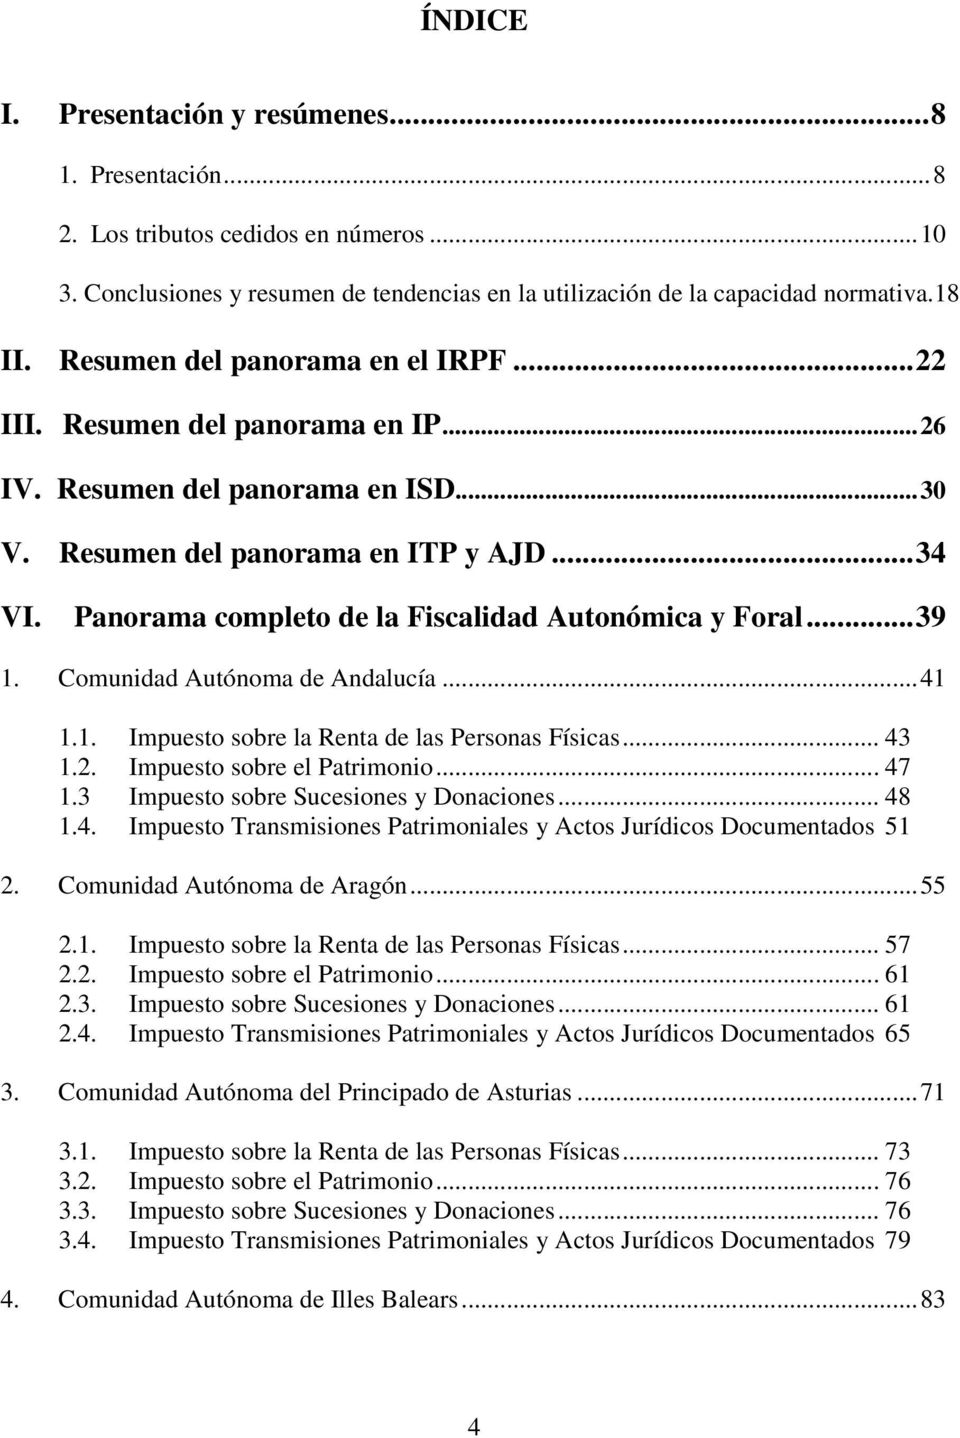 Panorama completo de la Fiscalidad Autonómica y Foral... 39 1. Comunidad Autónoma de Andalucía... 41 1.1. Impuesto sobre la Renta de las Personas Físicas... 43 1.2. Impuesto sobre el Patrimonio... 47 1.